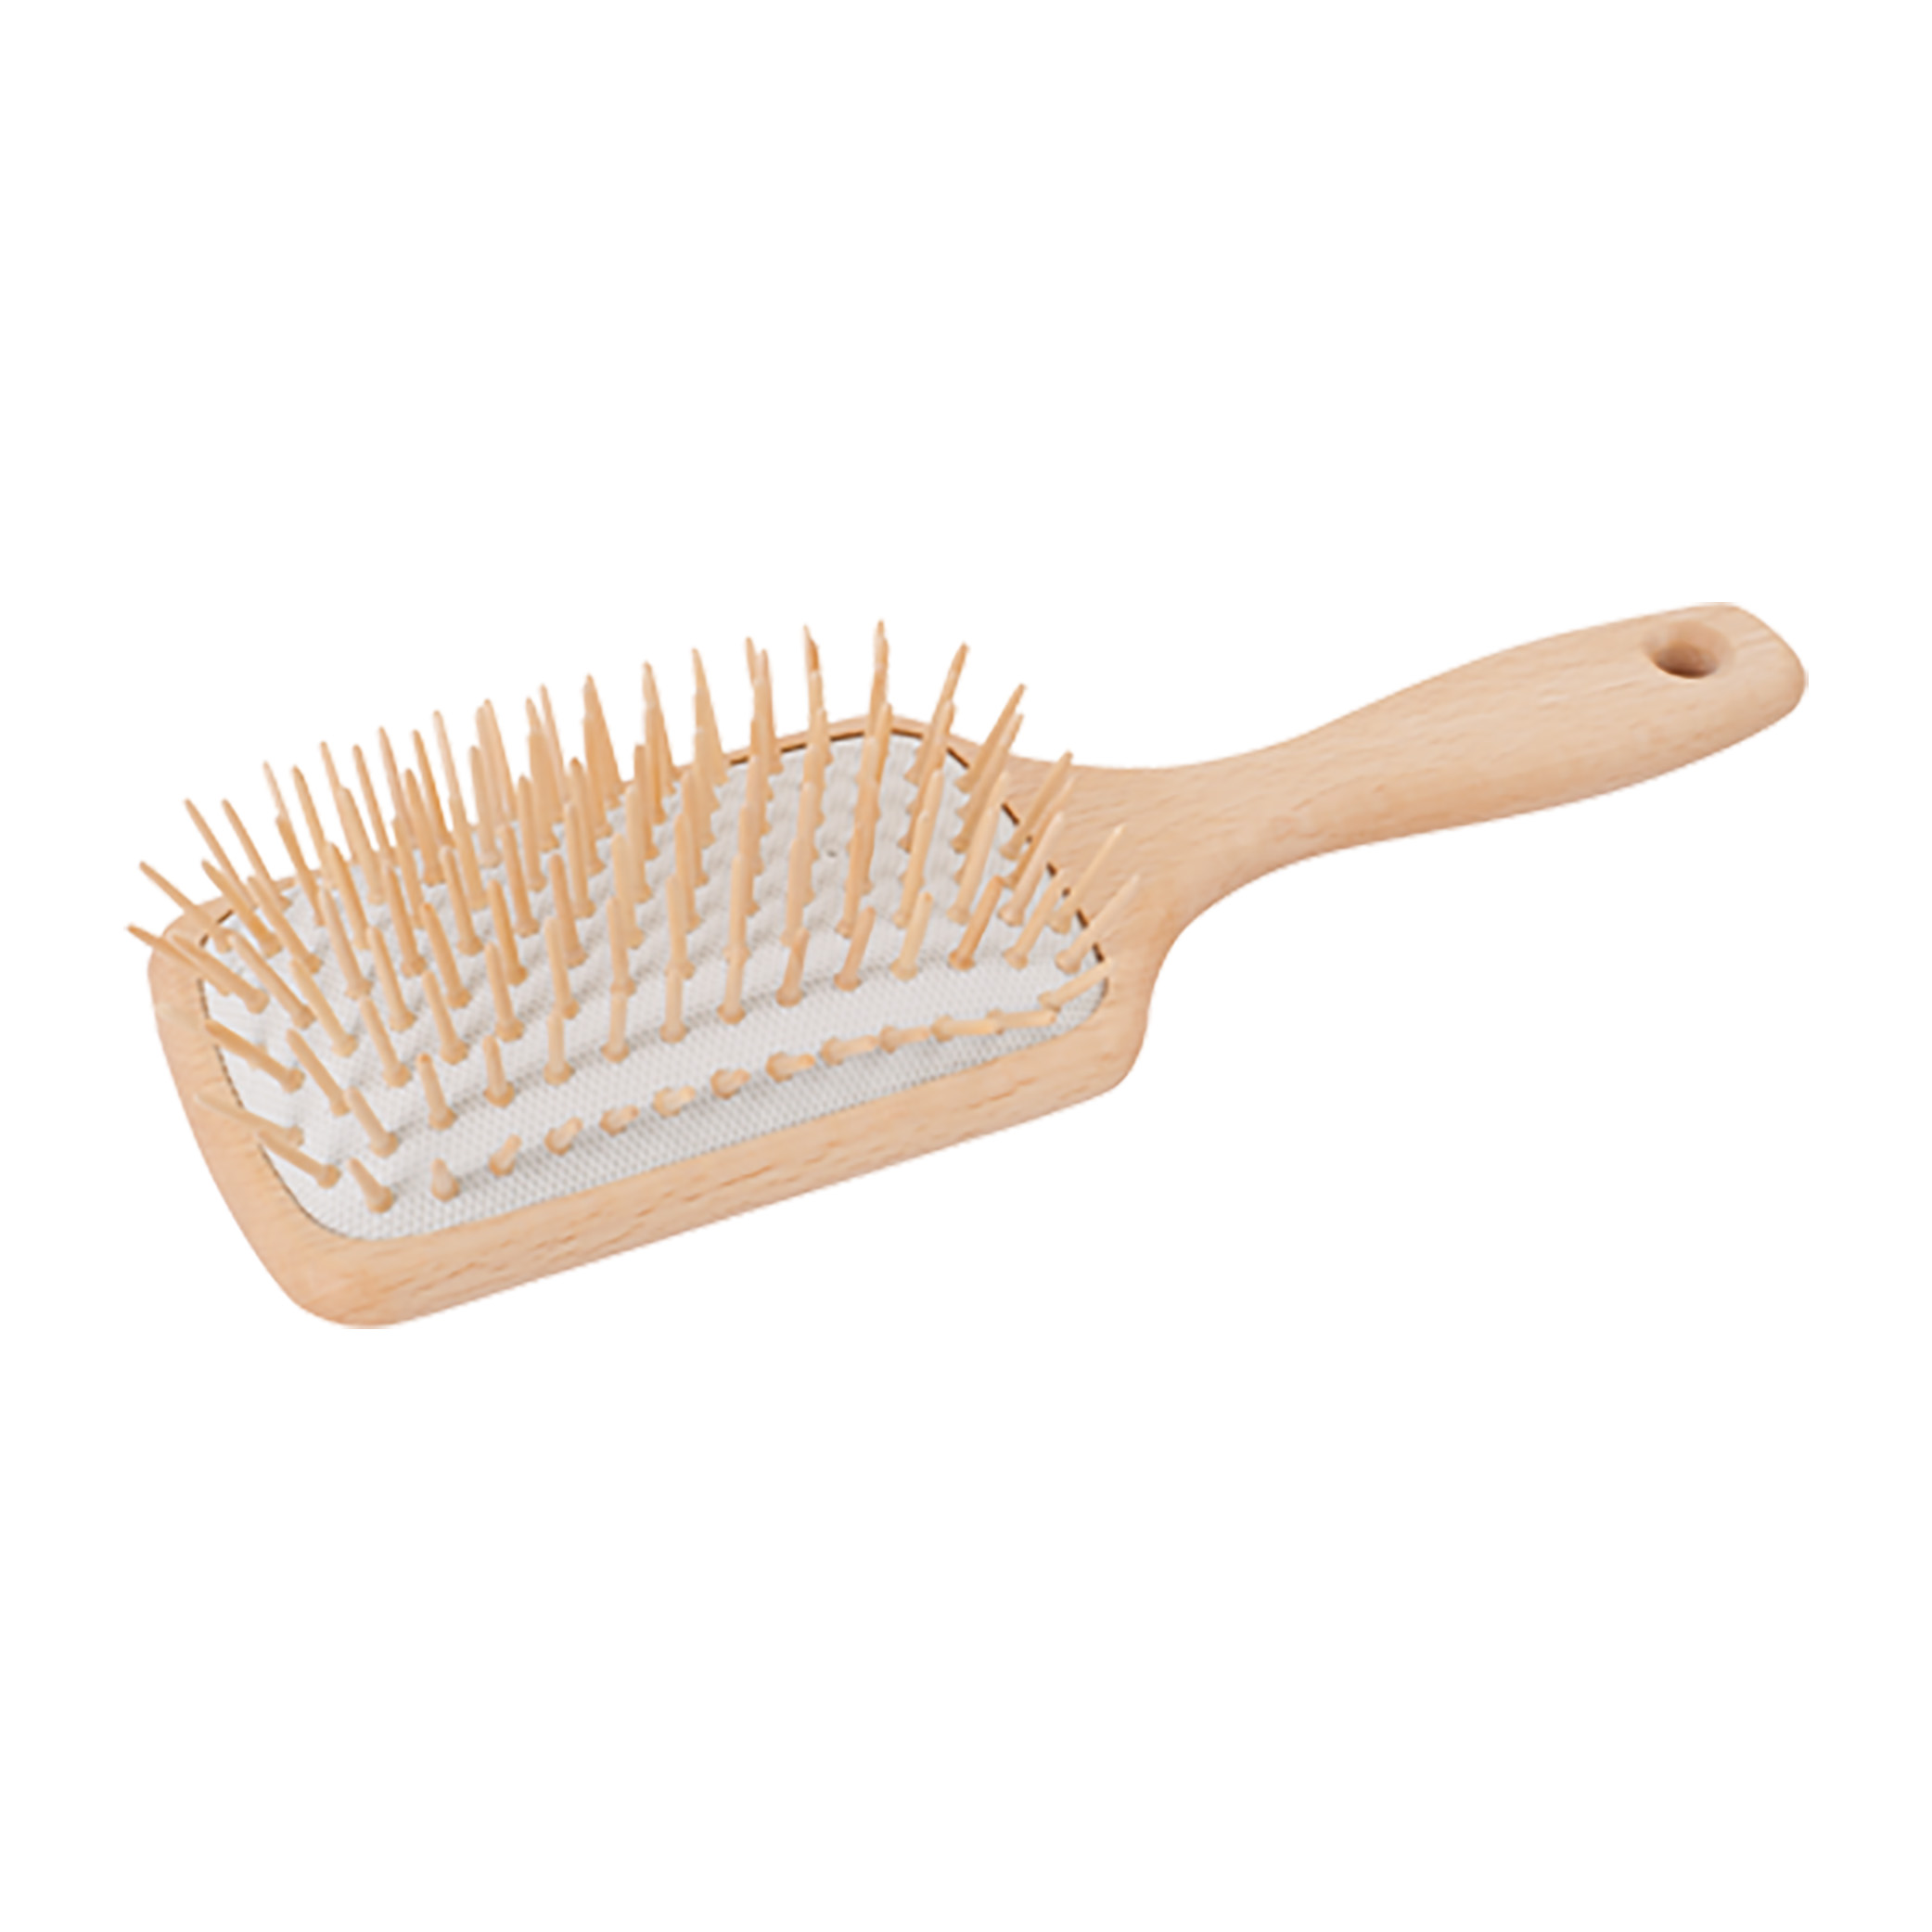 Redecker Wooden Rectangular Large hair brush for long hair